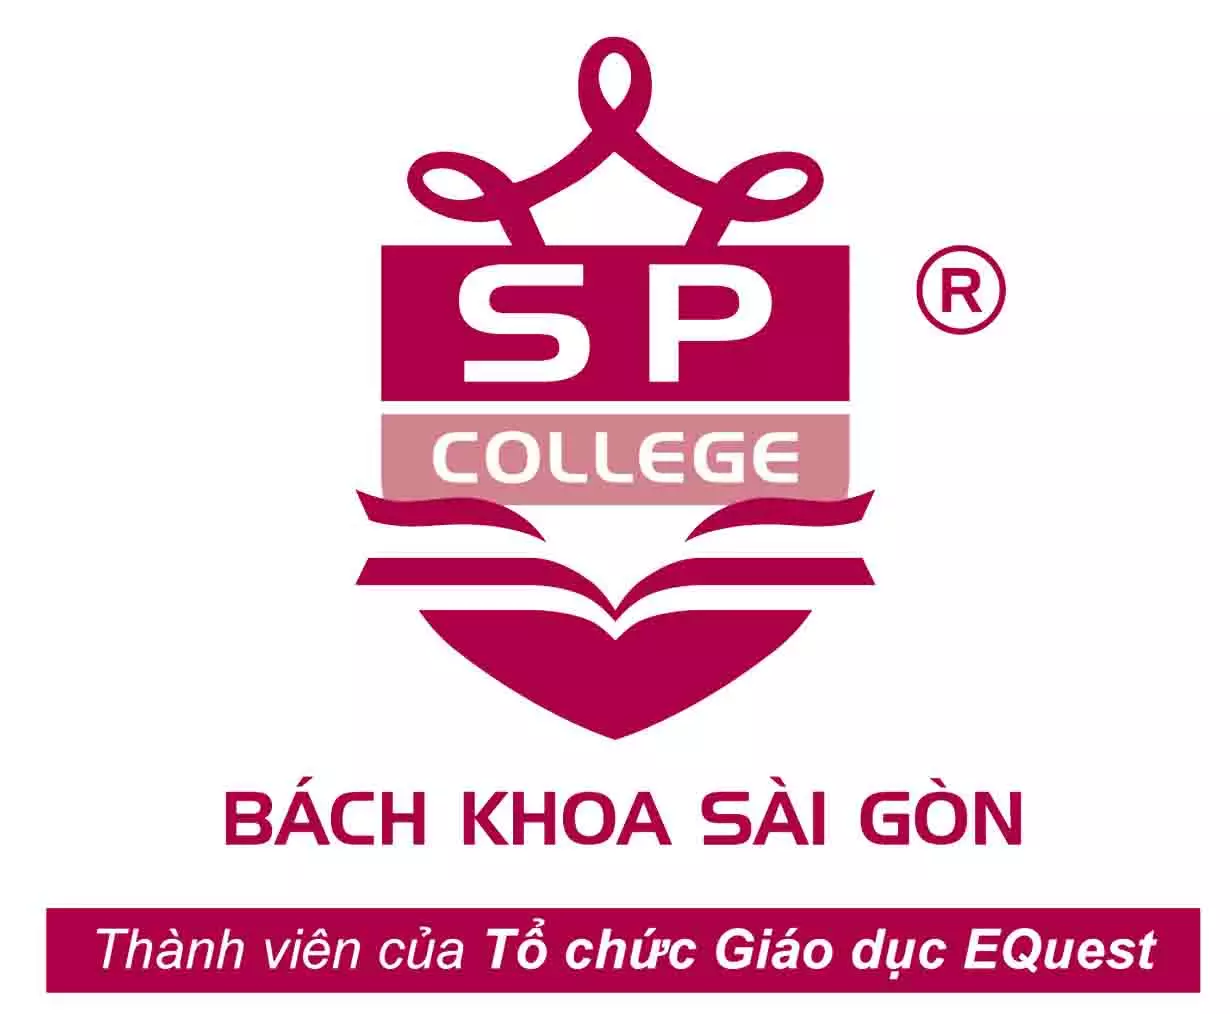 Trường Trung cấp Bách Khoa Sài Gòn